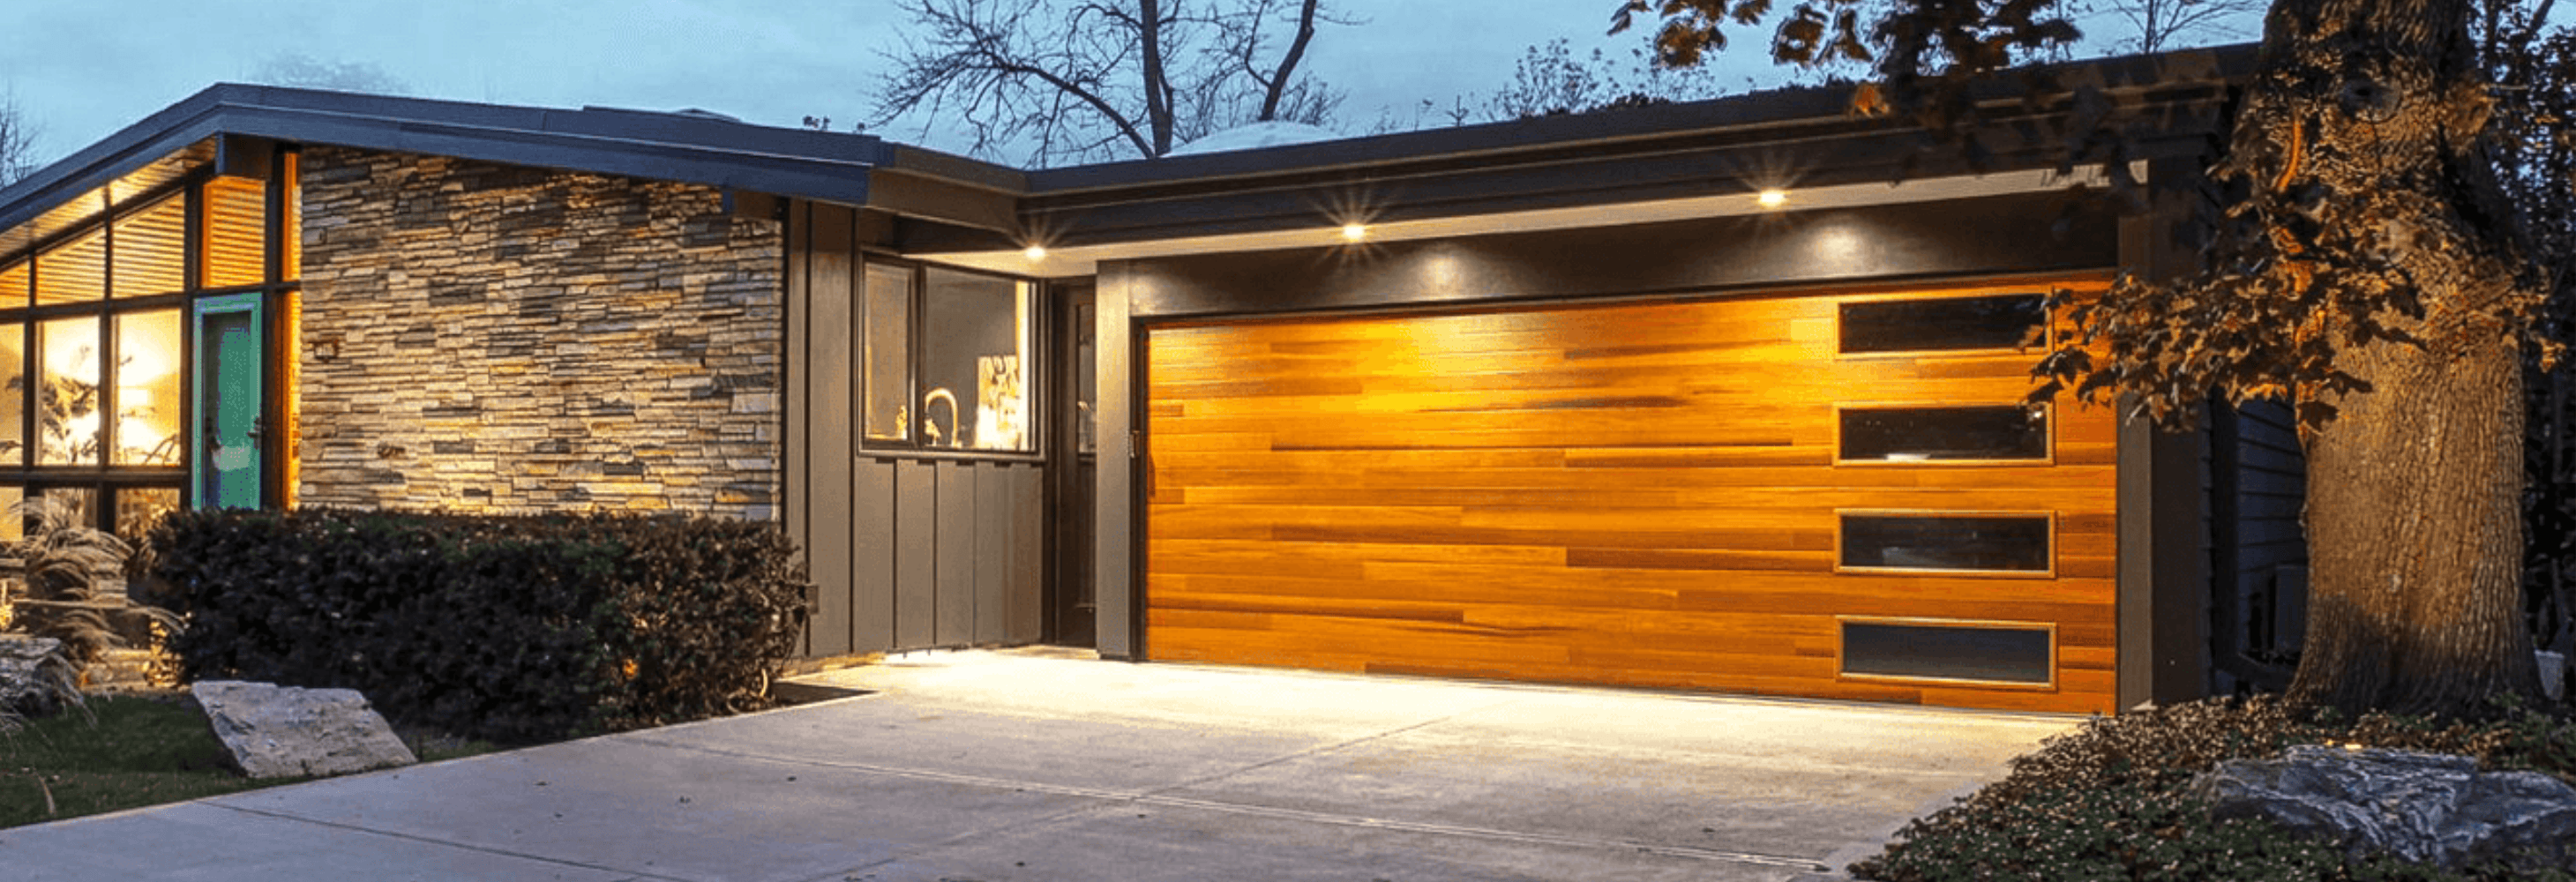 planks garage door in cedar accents 